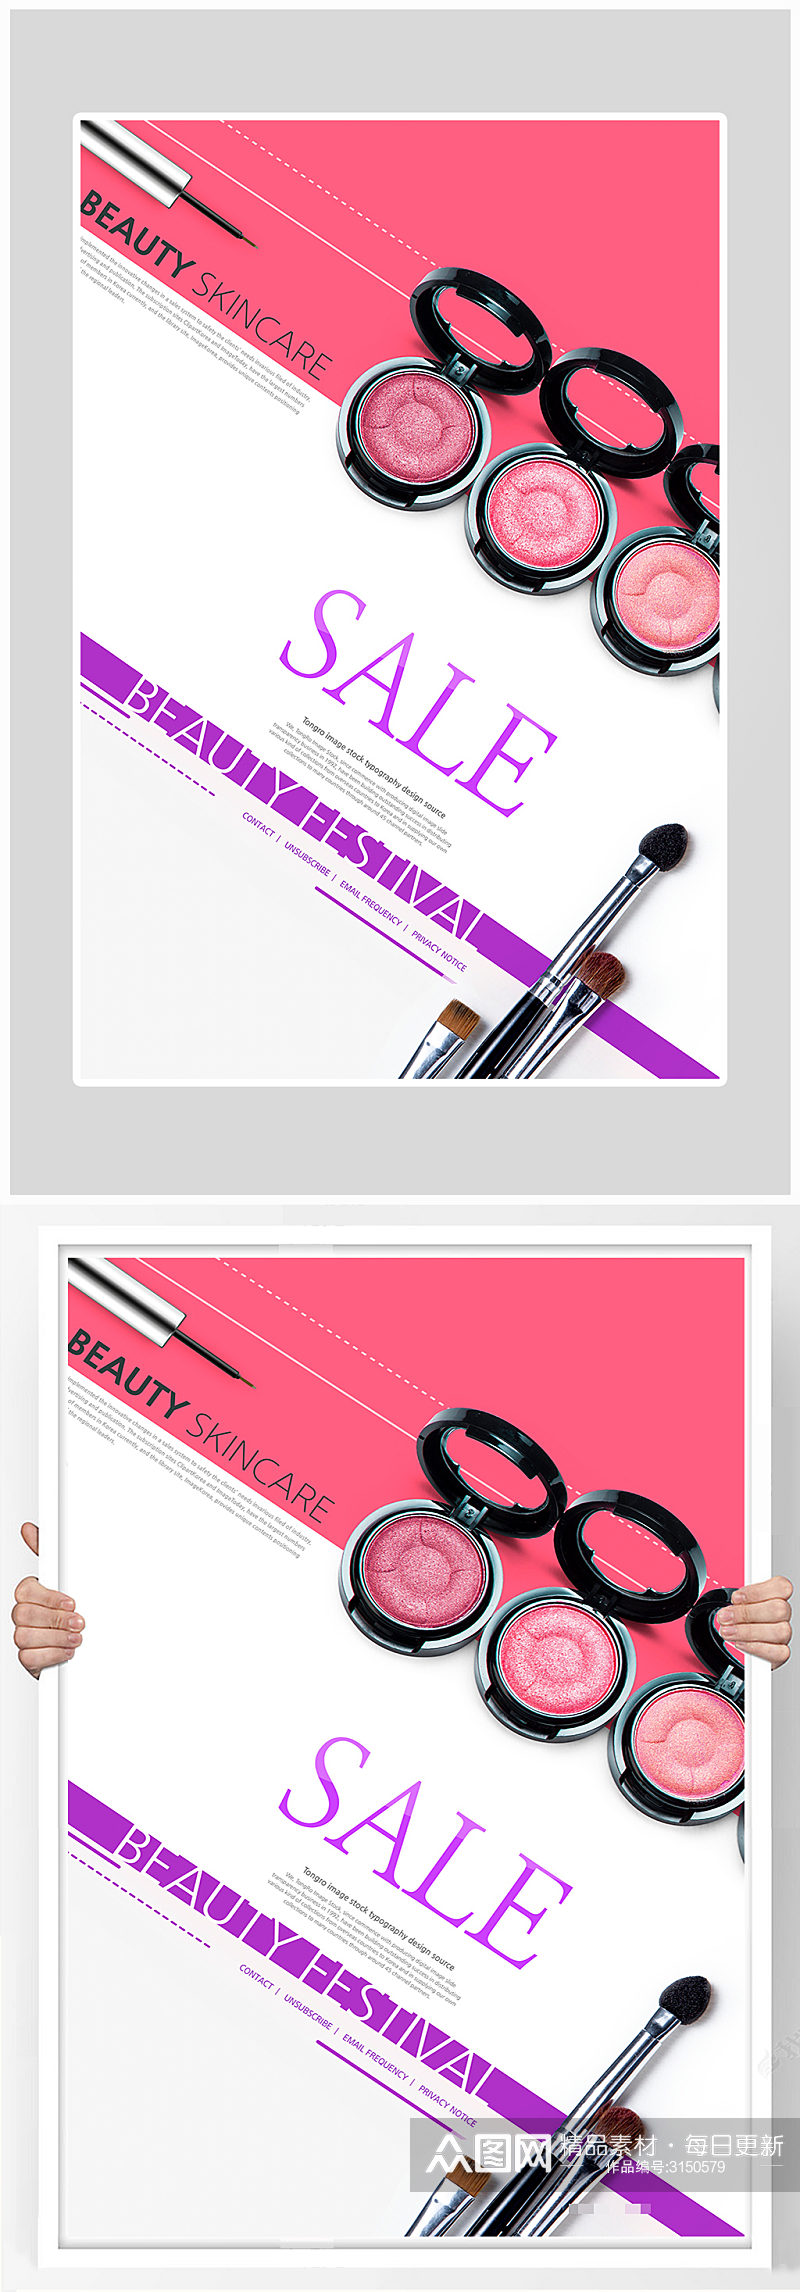 创意化妆眉笔粉底海报设计素材